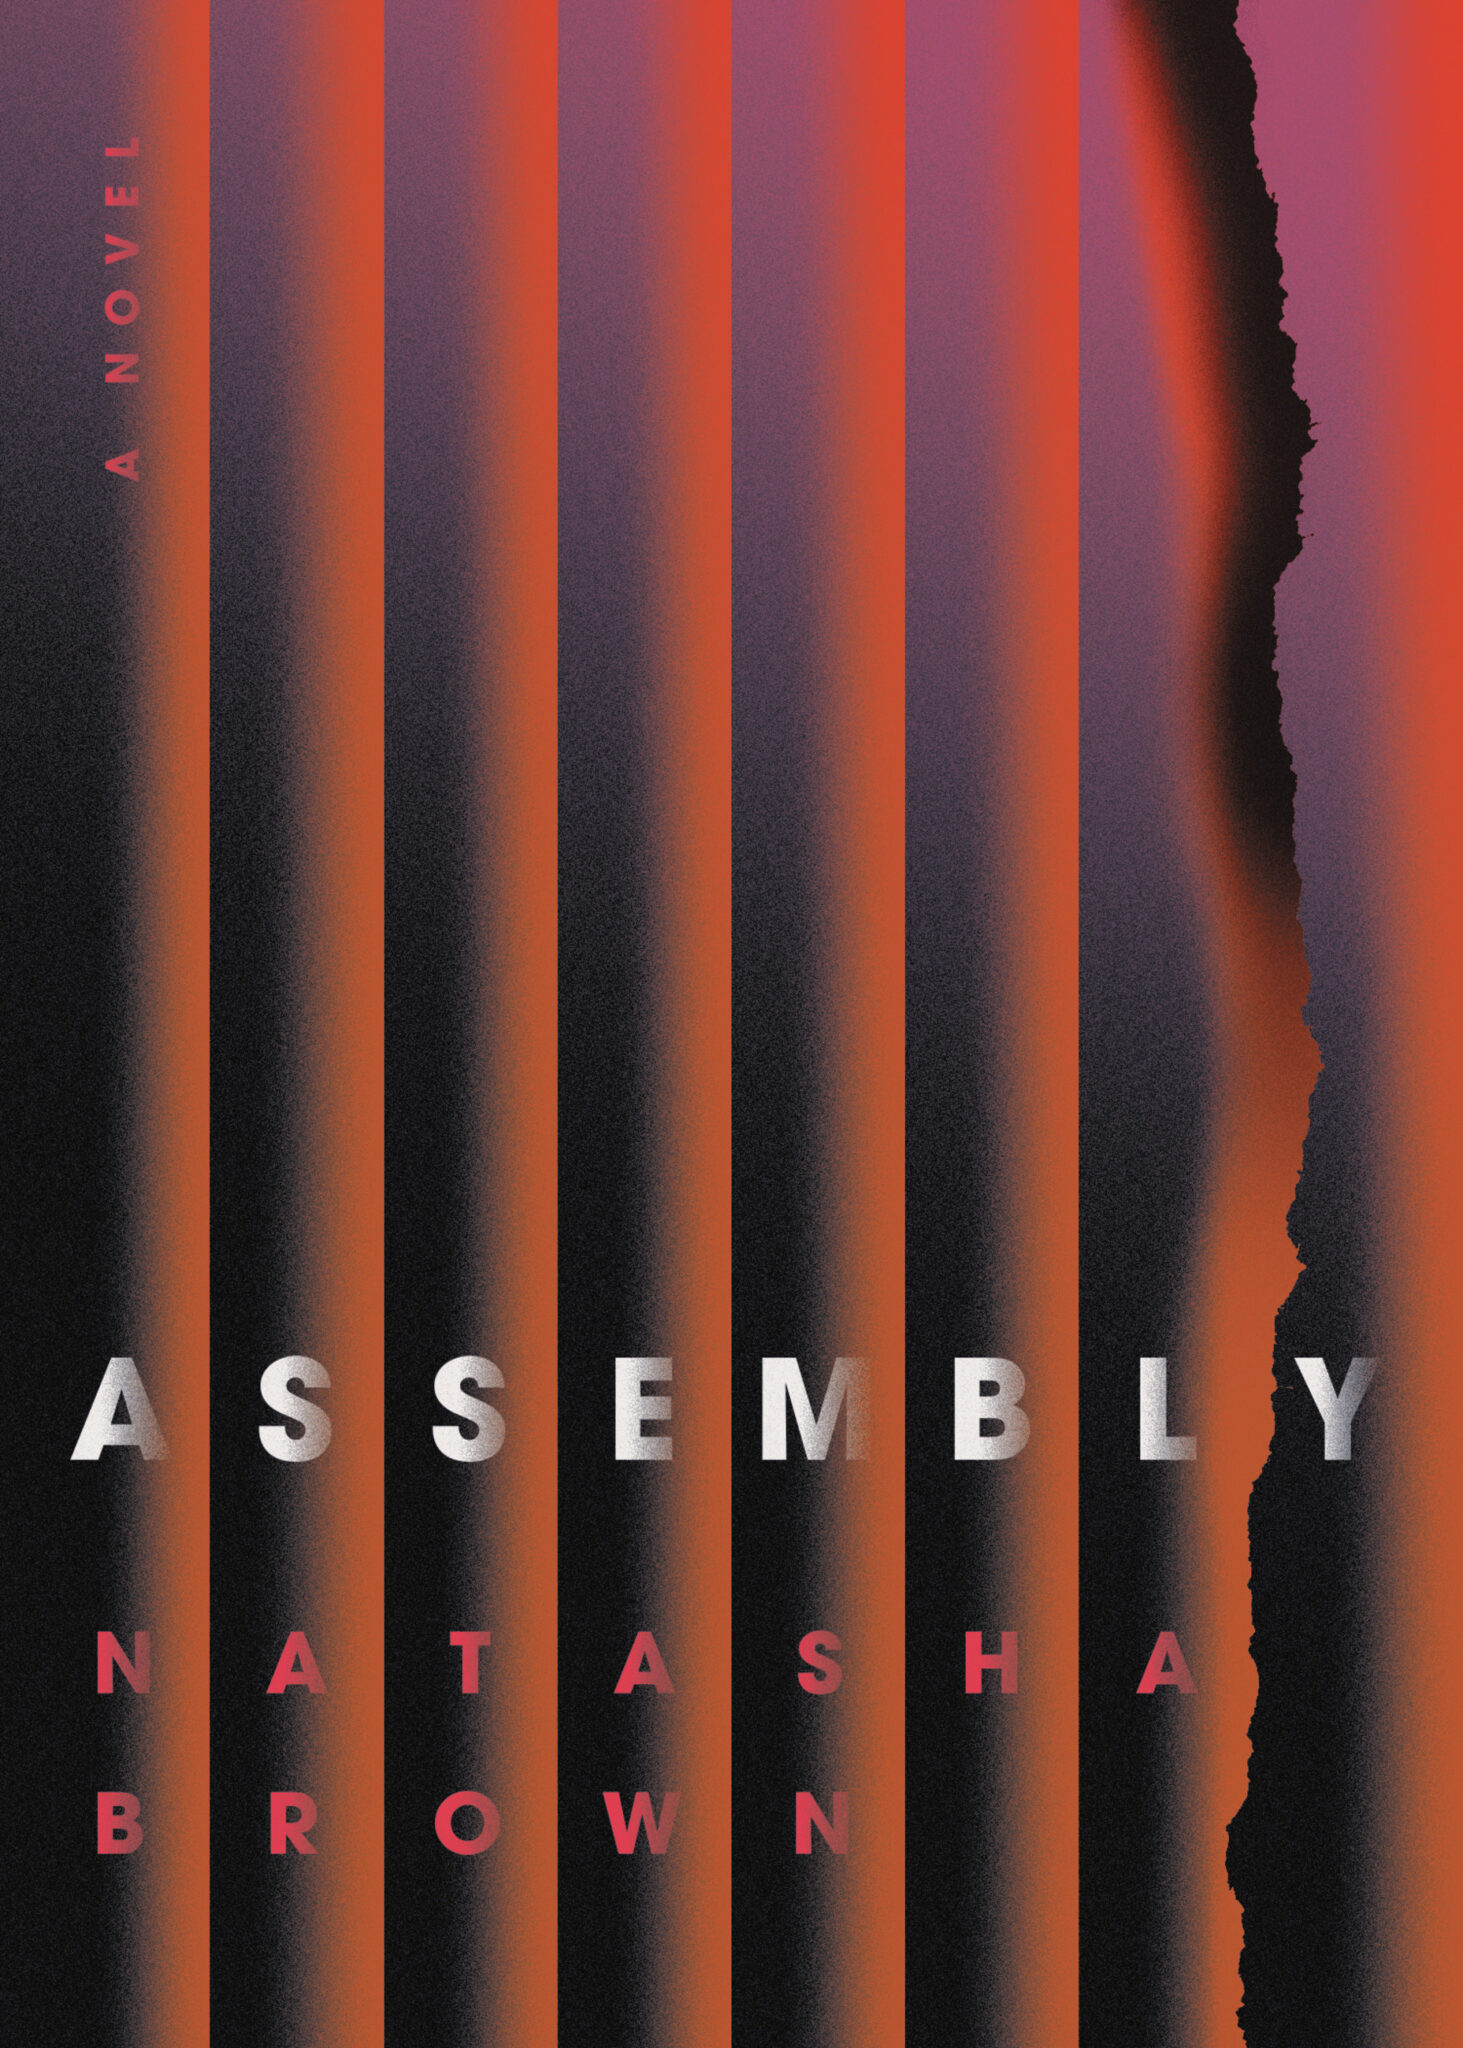 brown natasha assembly 2019